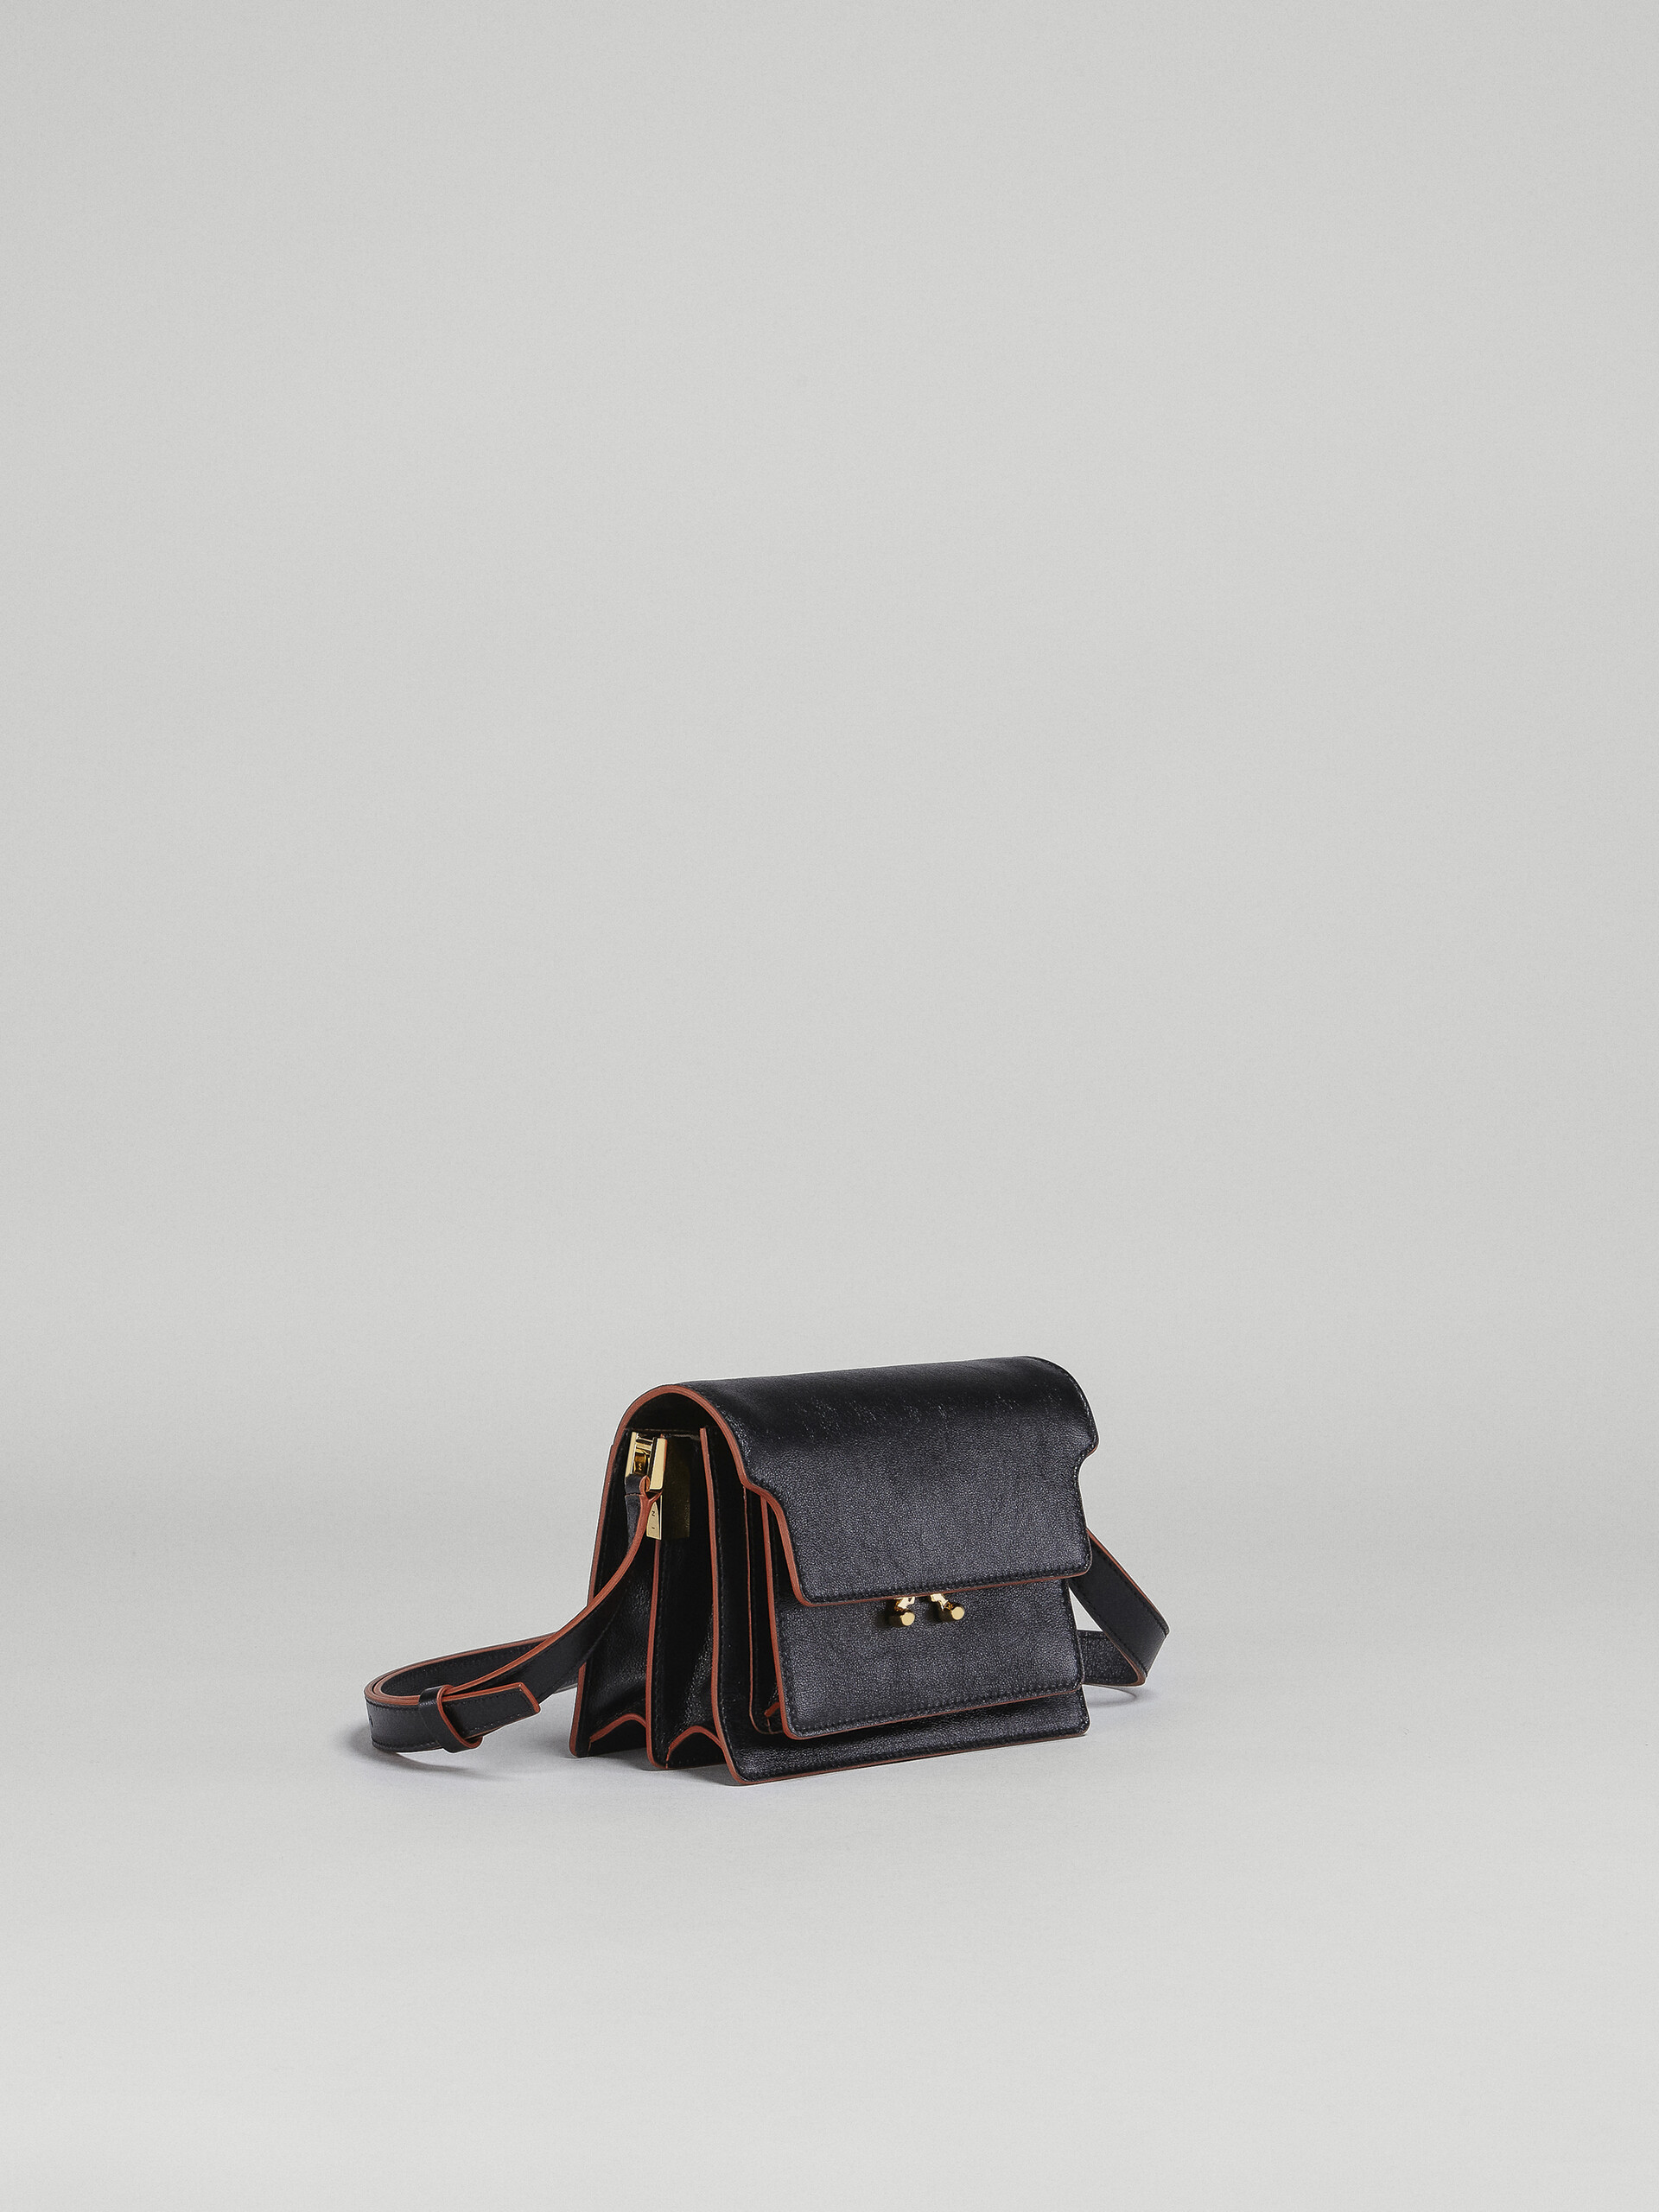 Trunk Soft Bag Mini in pelle nera - Borse a spalla - Image 6